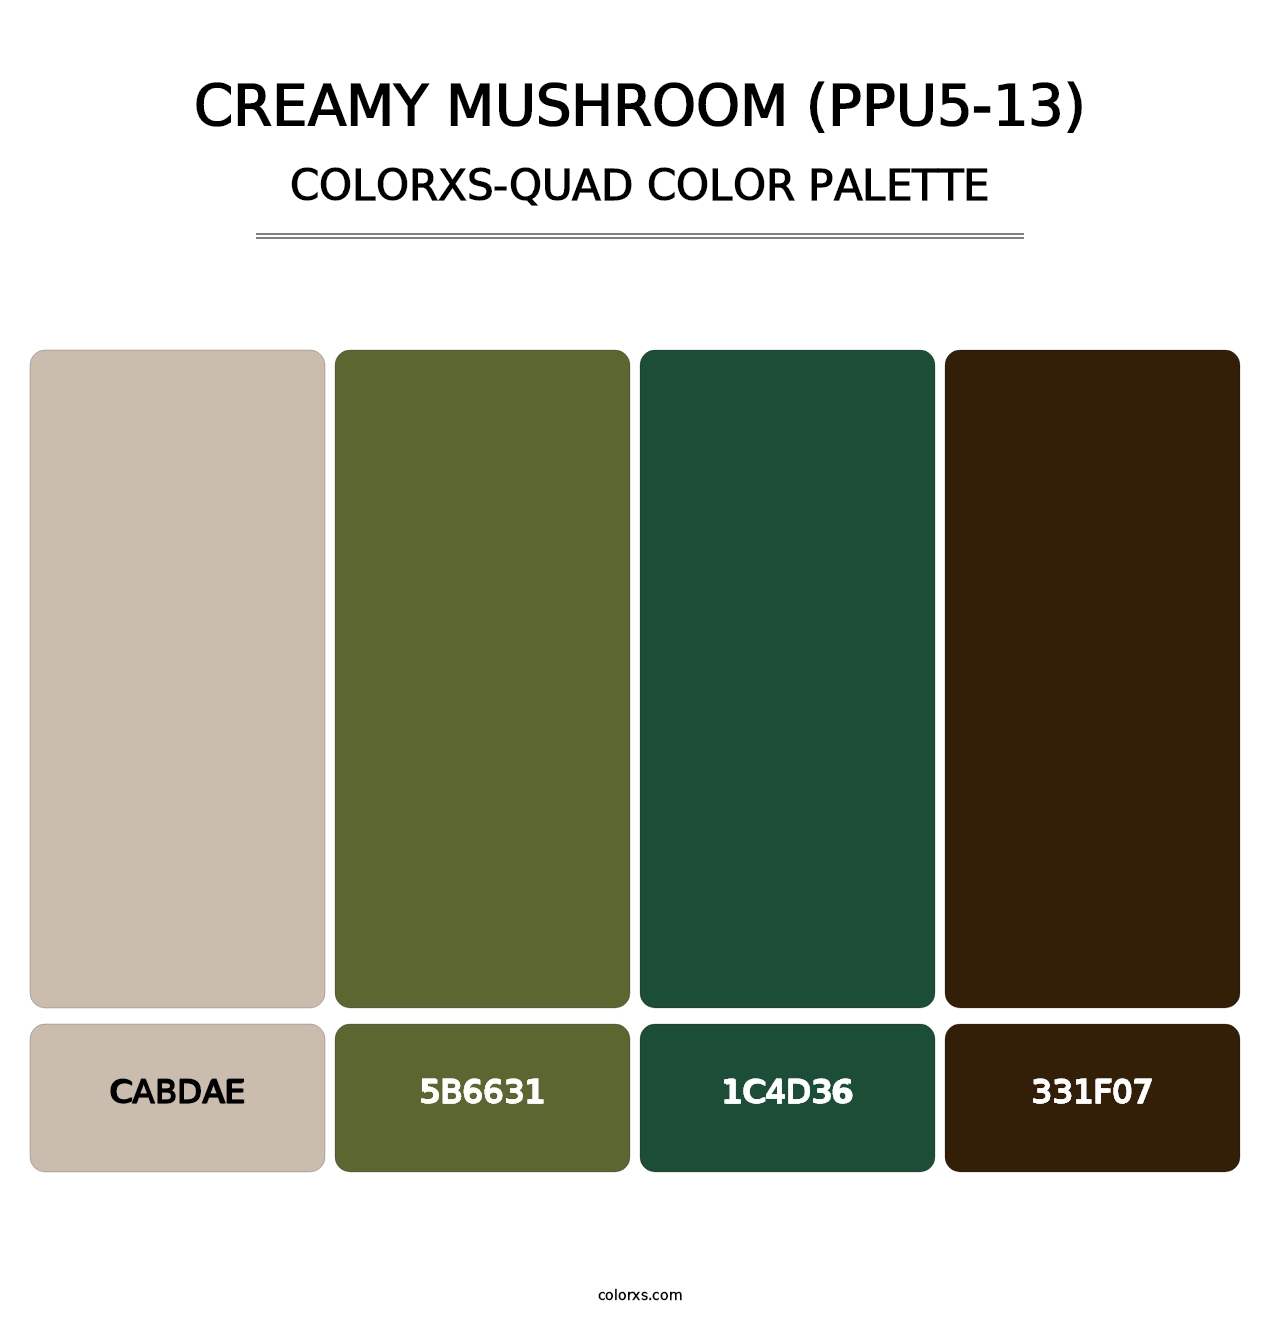 Creamy Mushroom (PPU5-13) - Colorxs Quad Palette